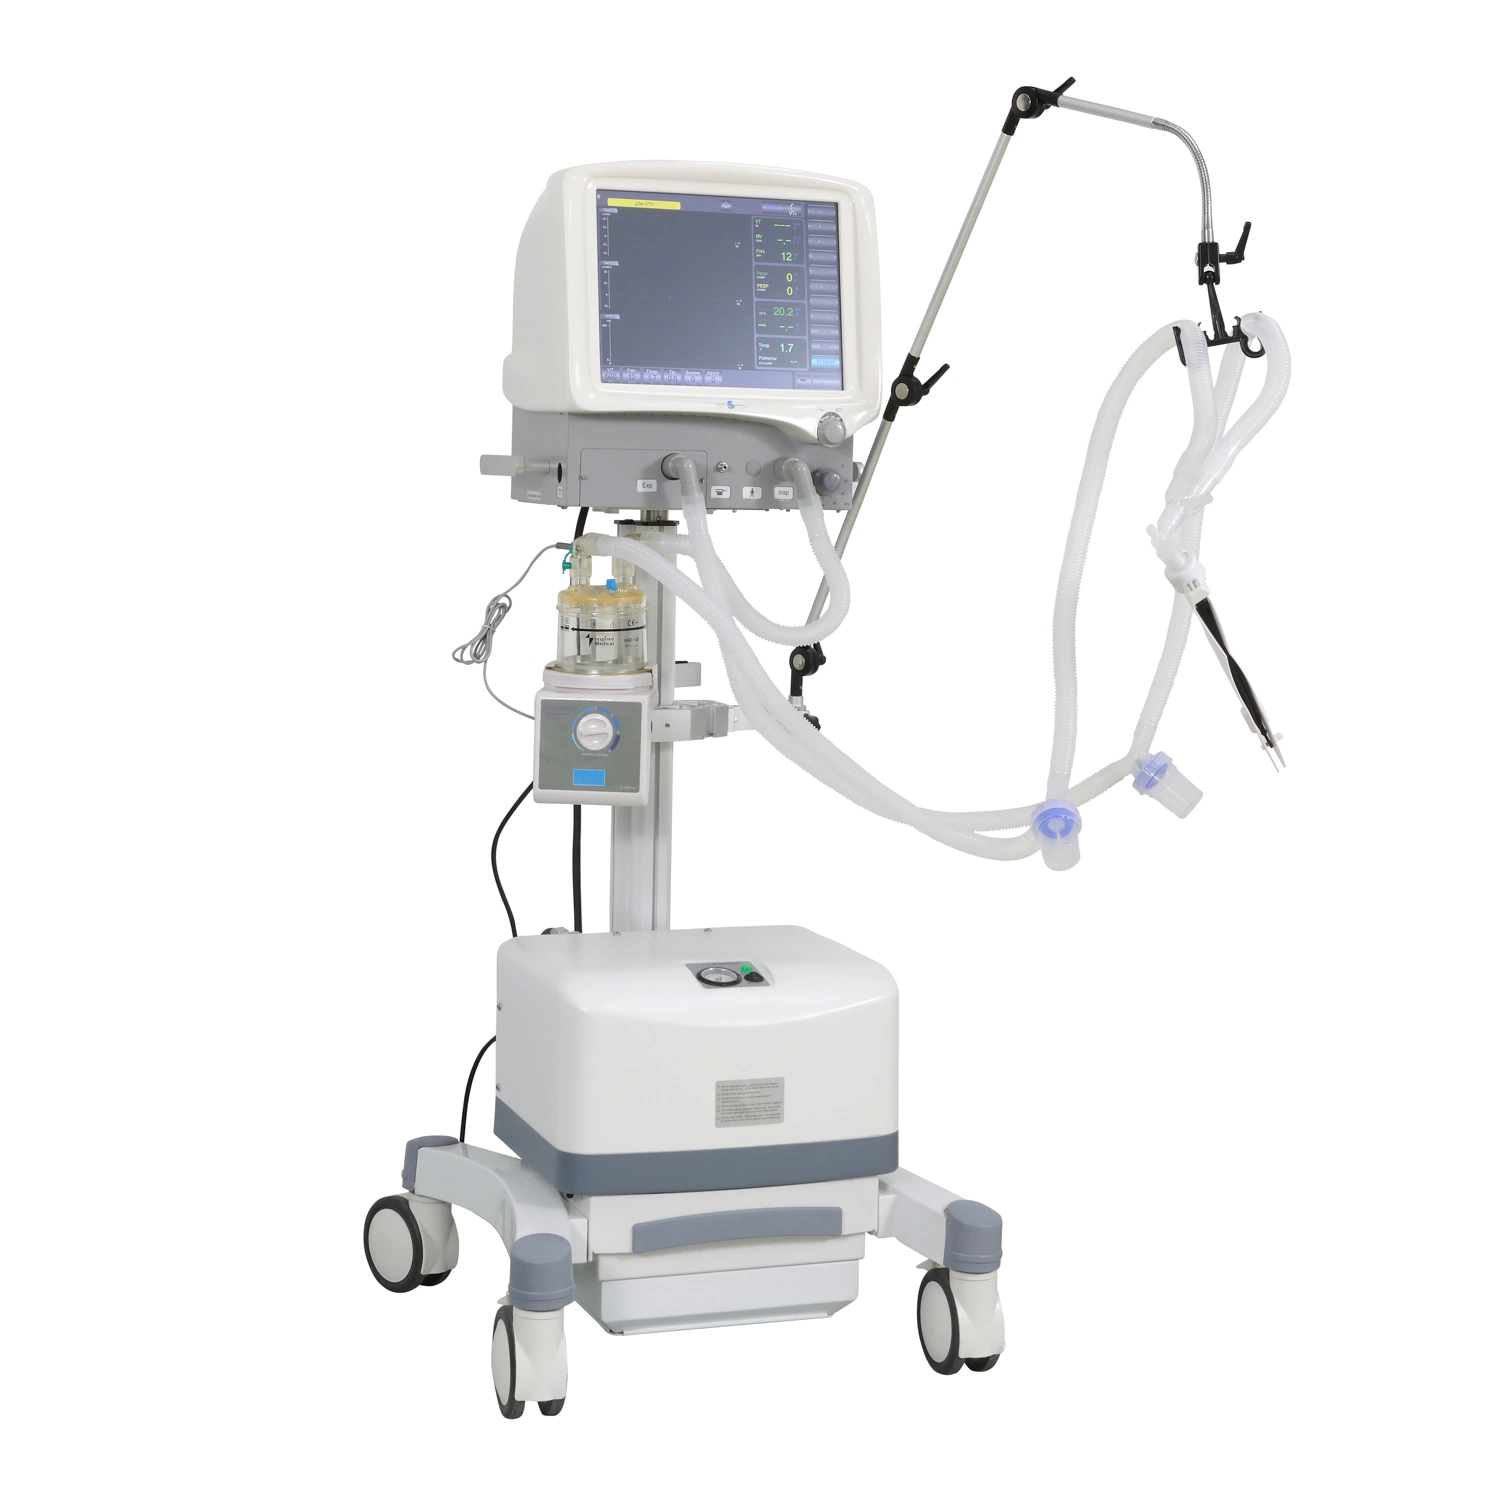 Ecran tactile LCD TFT couleur 15" pour équipement chirurgical hospitalier Ventilateur S1100